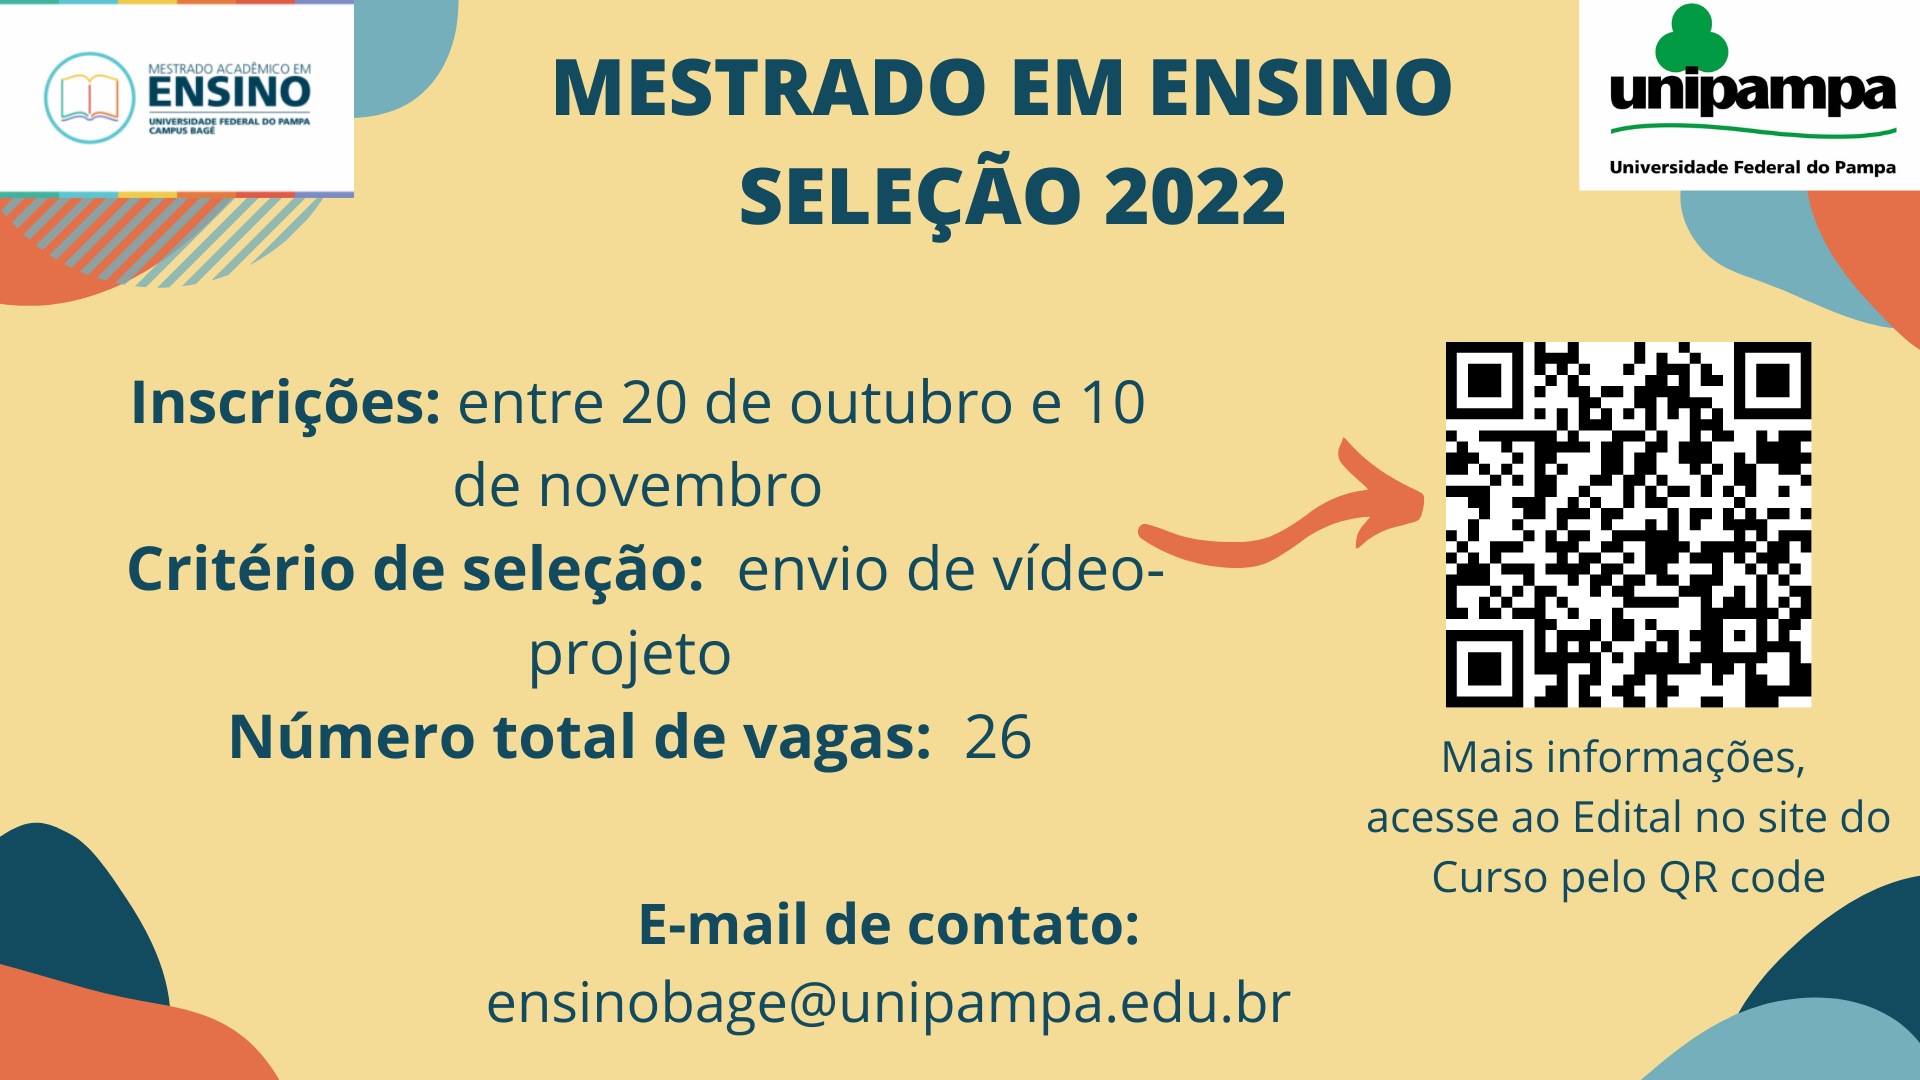 Mestrado em Ensino oferta 26 vagas para ingresso em 2022 - Divulgação